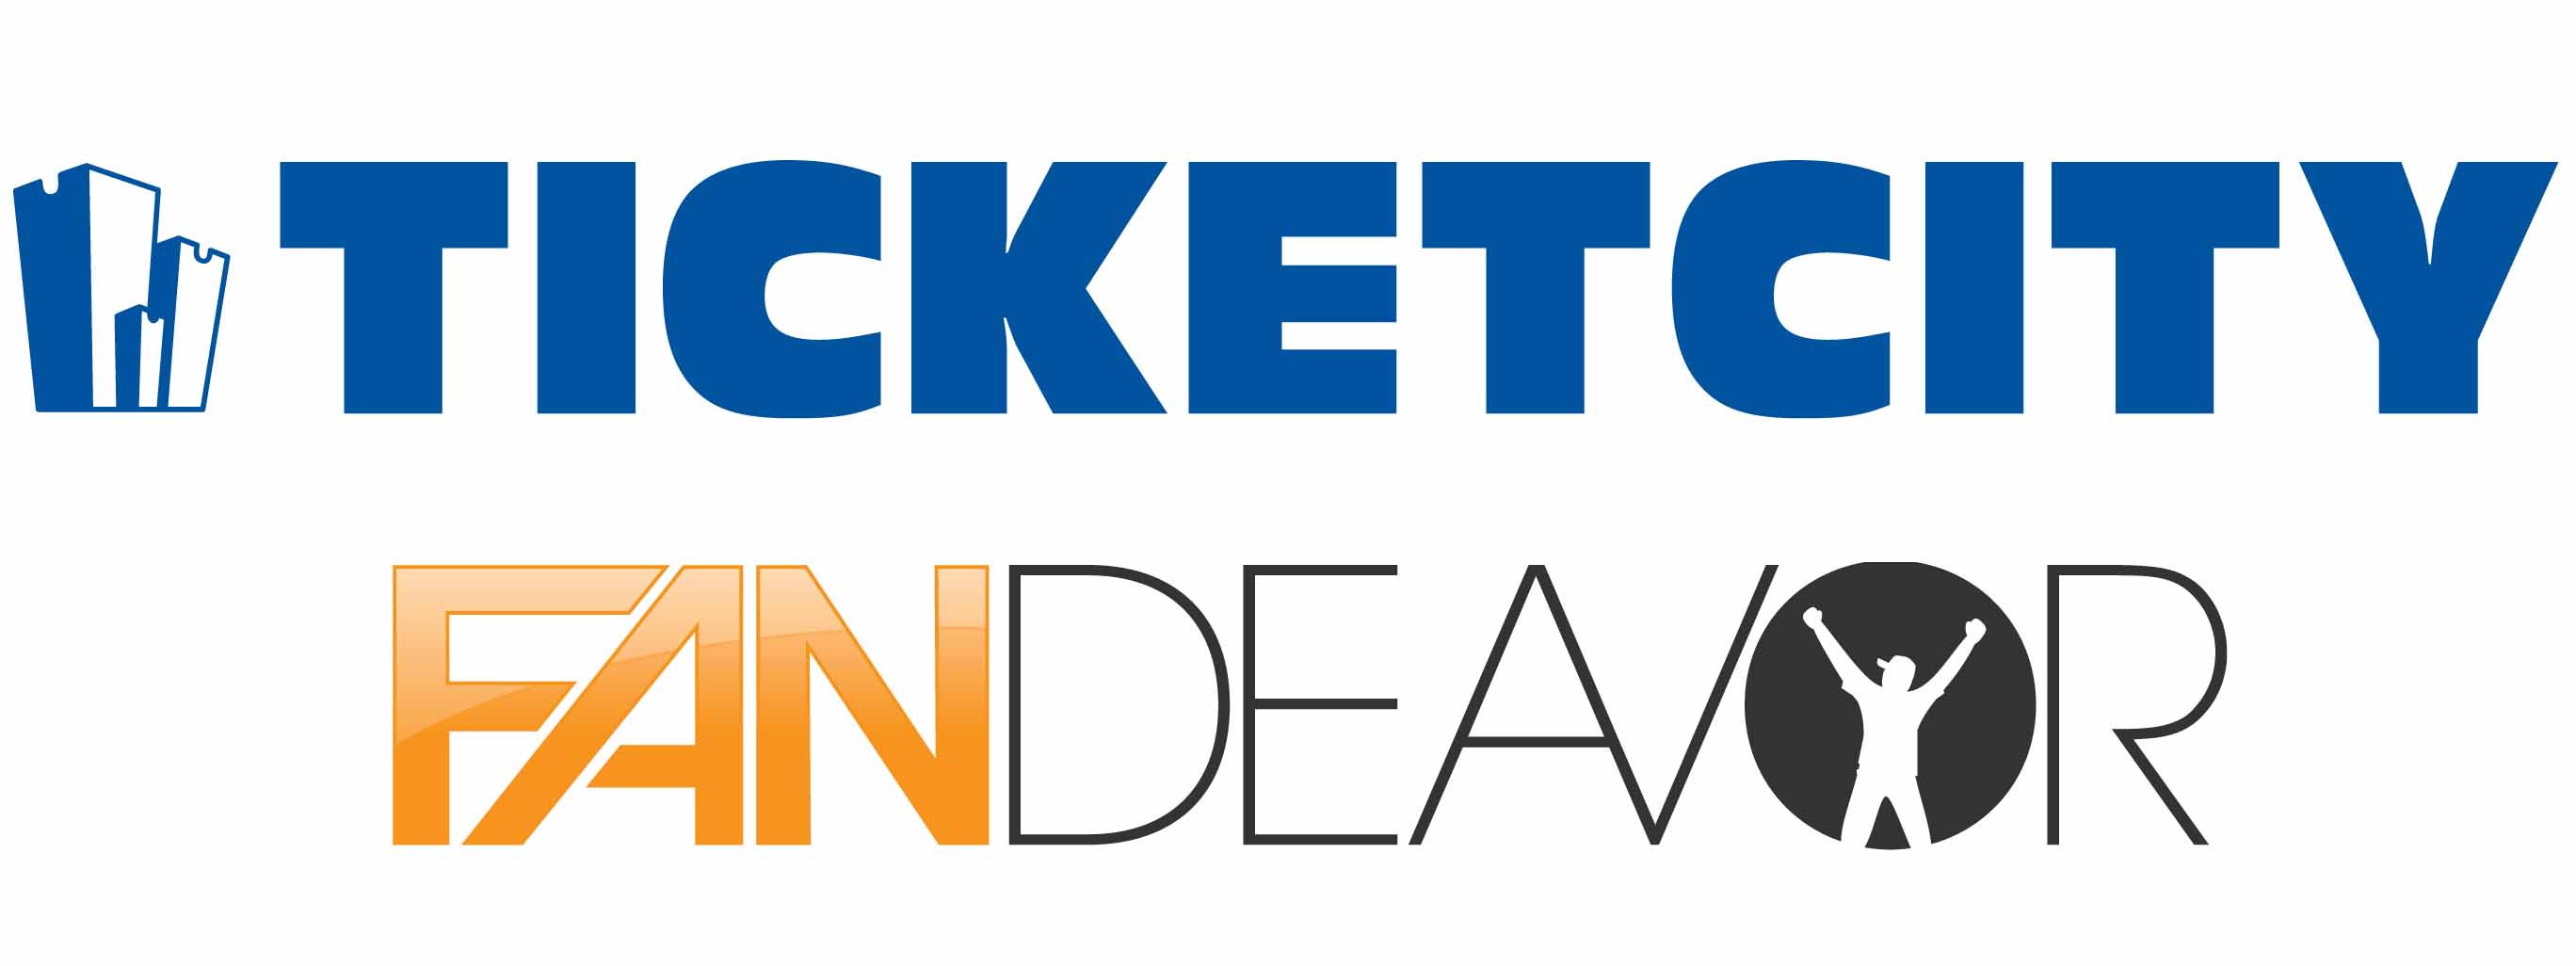 TicketCity acquires Fandeavor